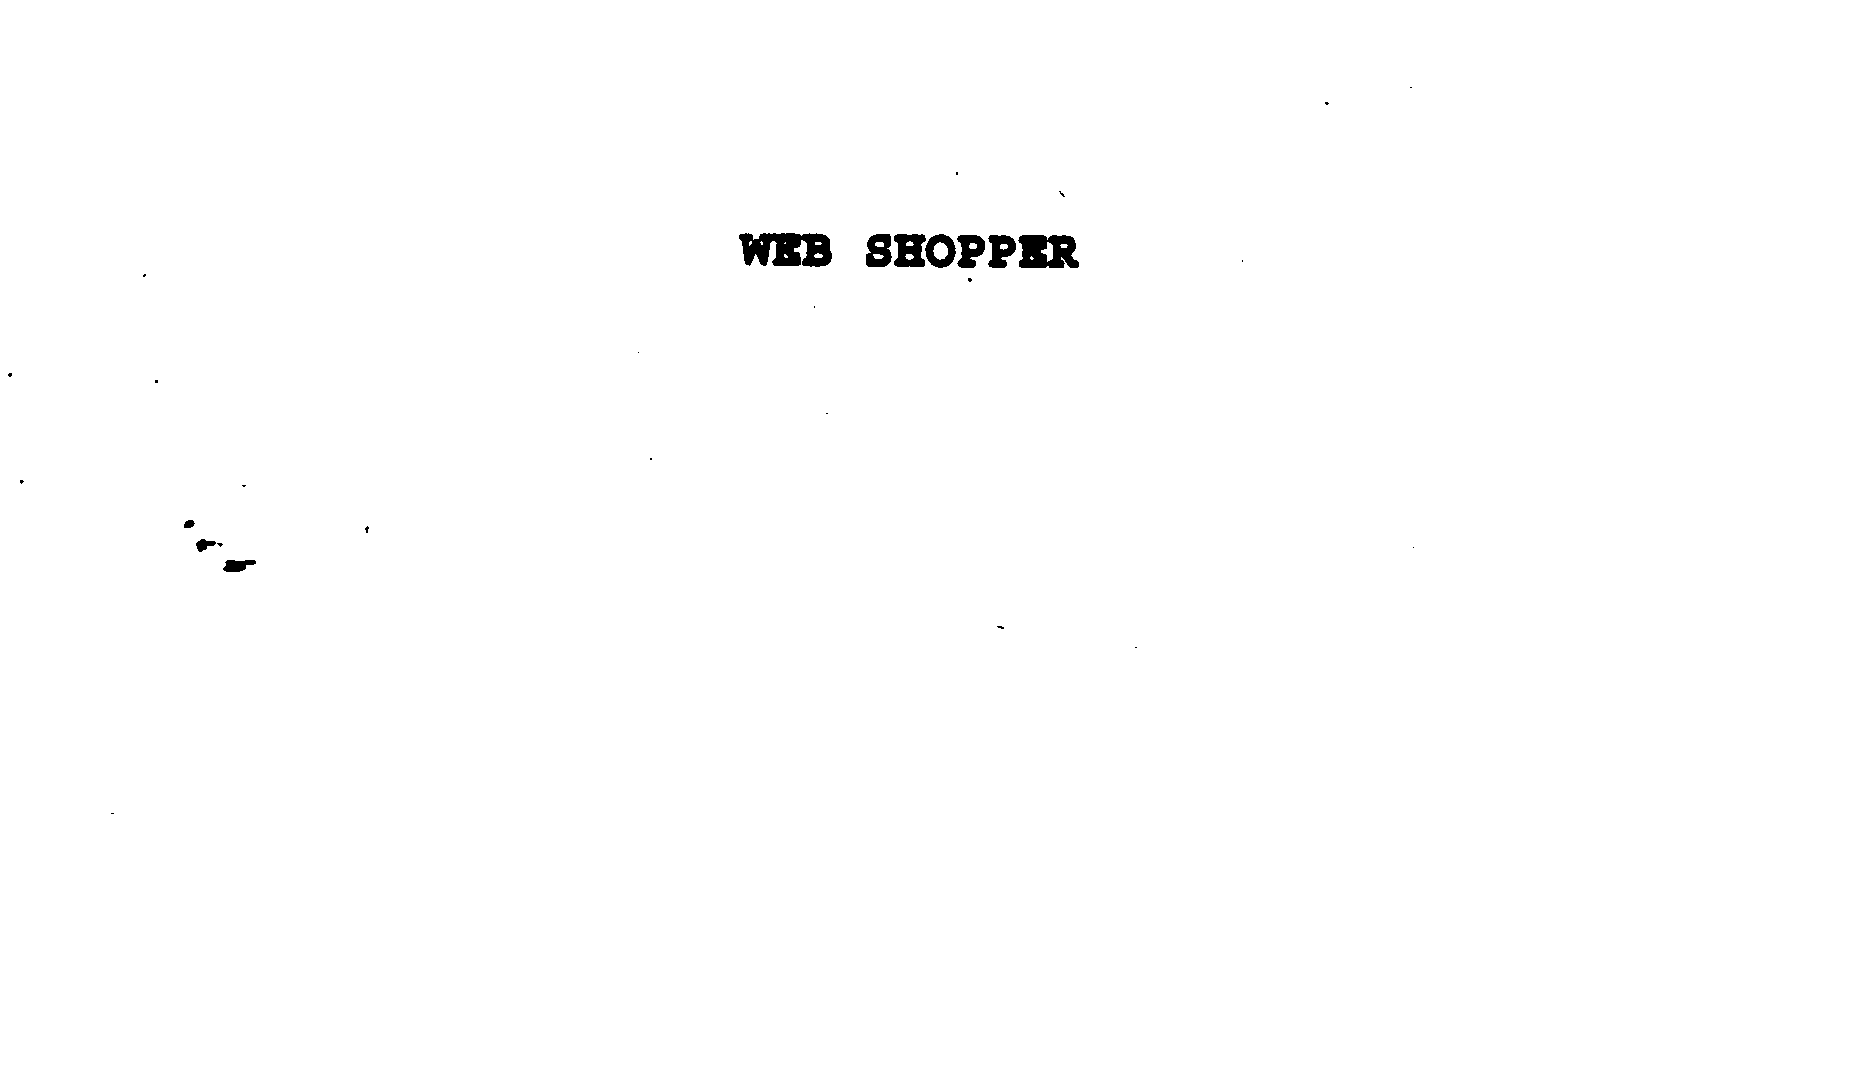  WEB SHOPPER